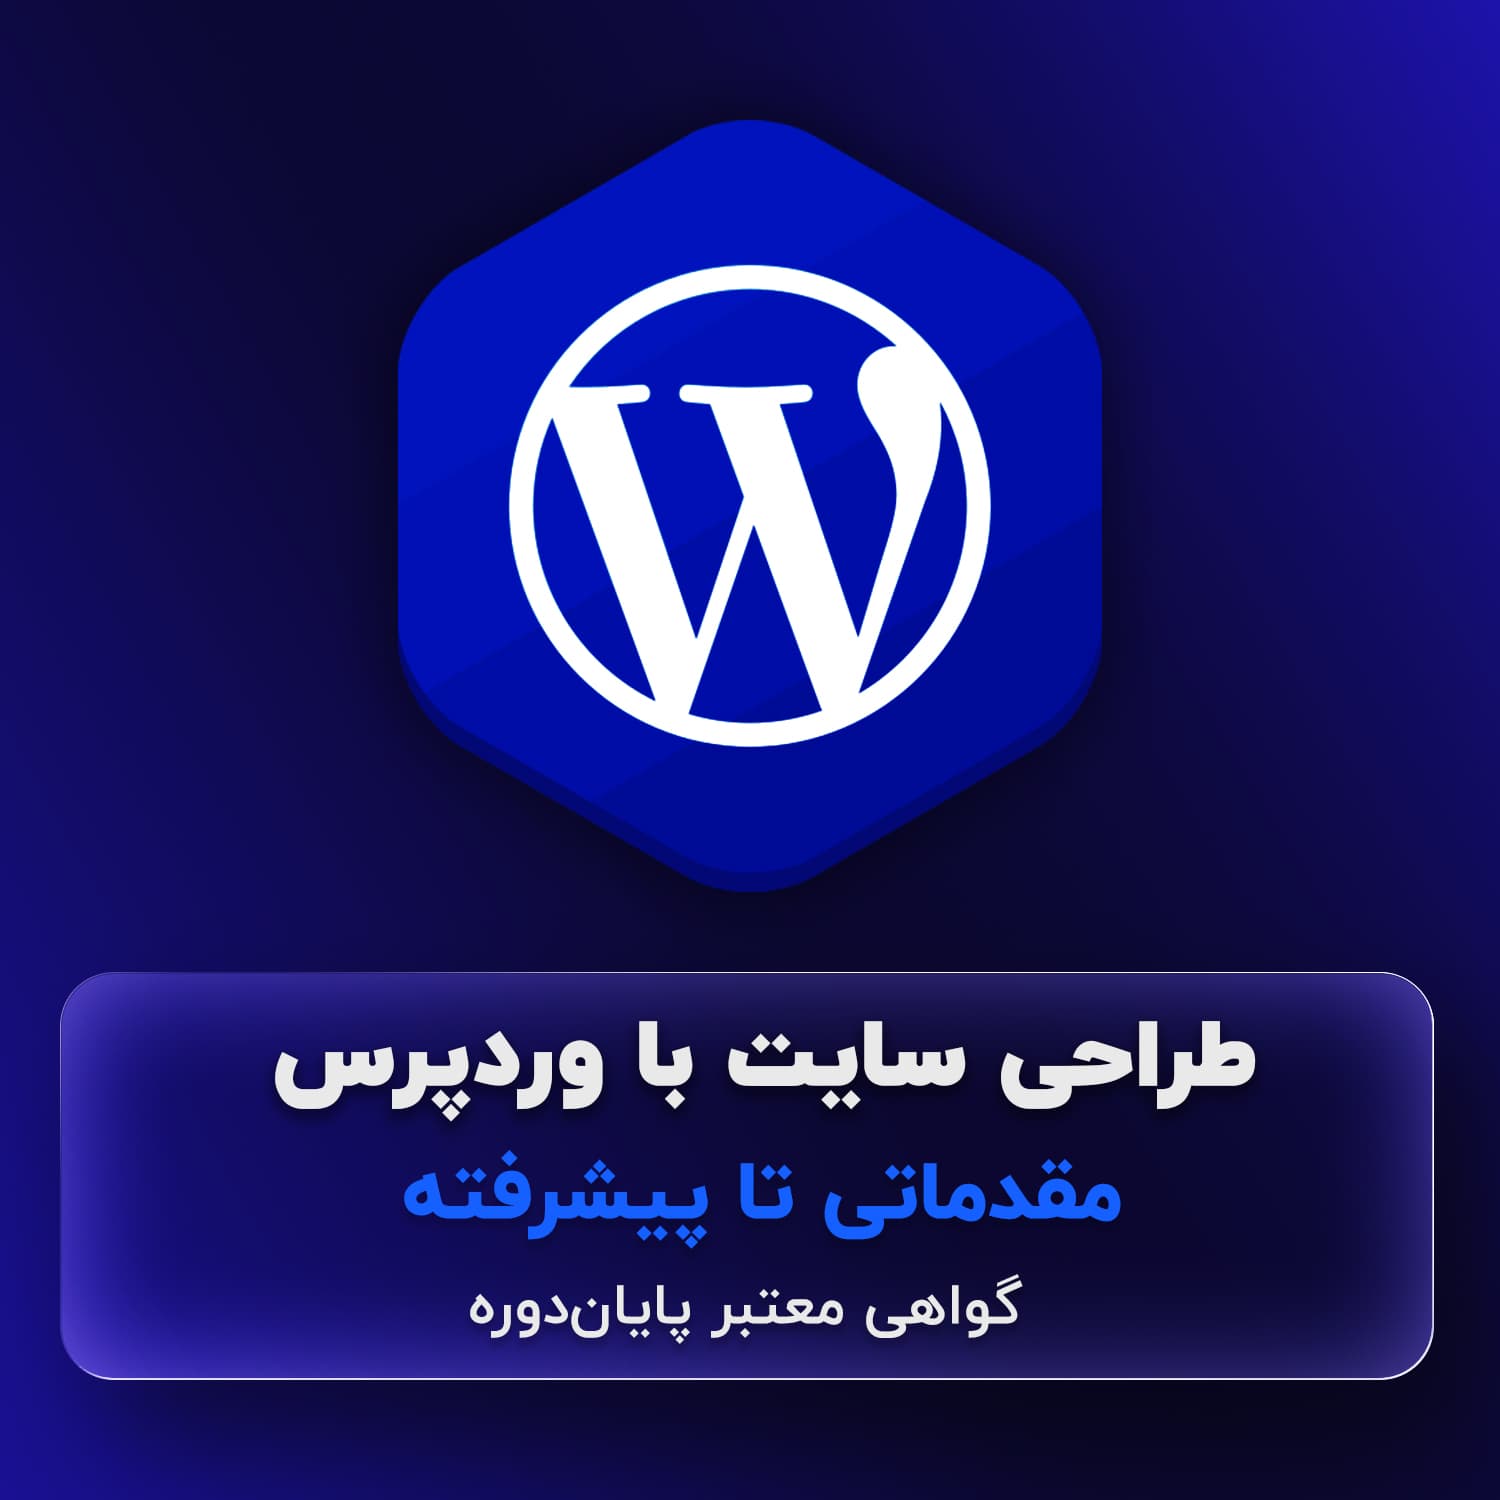 آموزش طراحی سایت با وردپرس Wordpress اصفهان